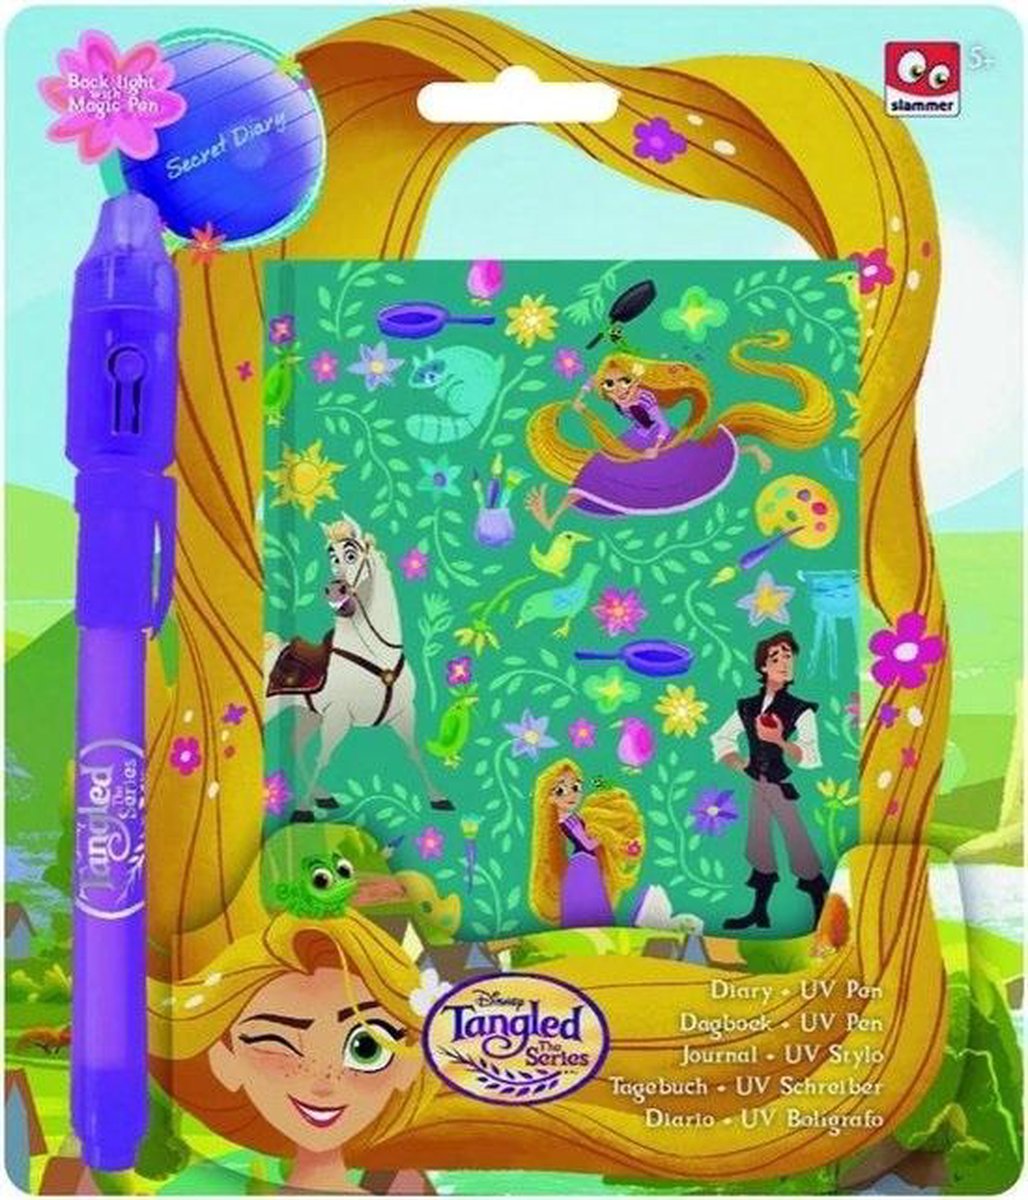 Dagboek rapunzel - prinsessen dagboekje - prinses - paard - met UV pen - geheim dagboek met magische pen - disney tangled the series - Rapunzel